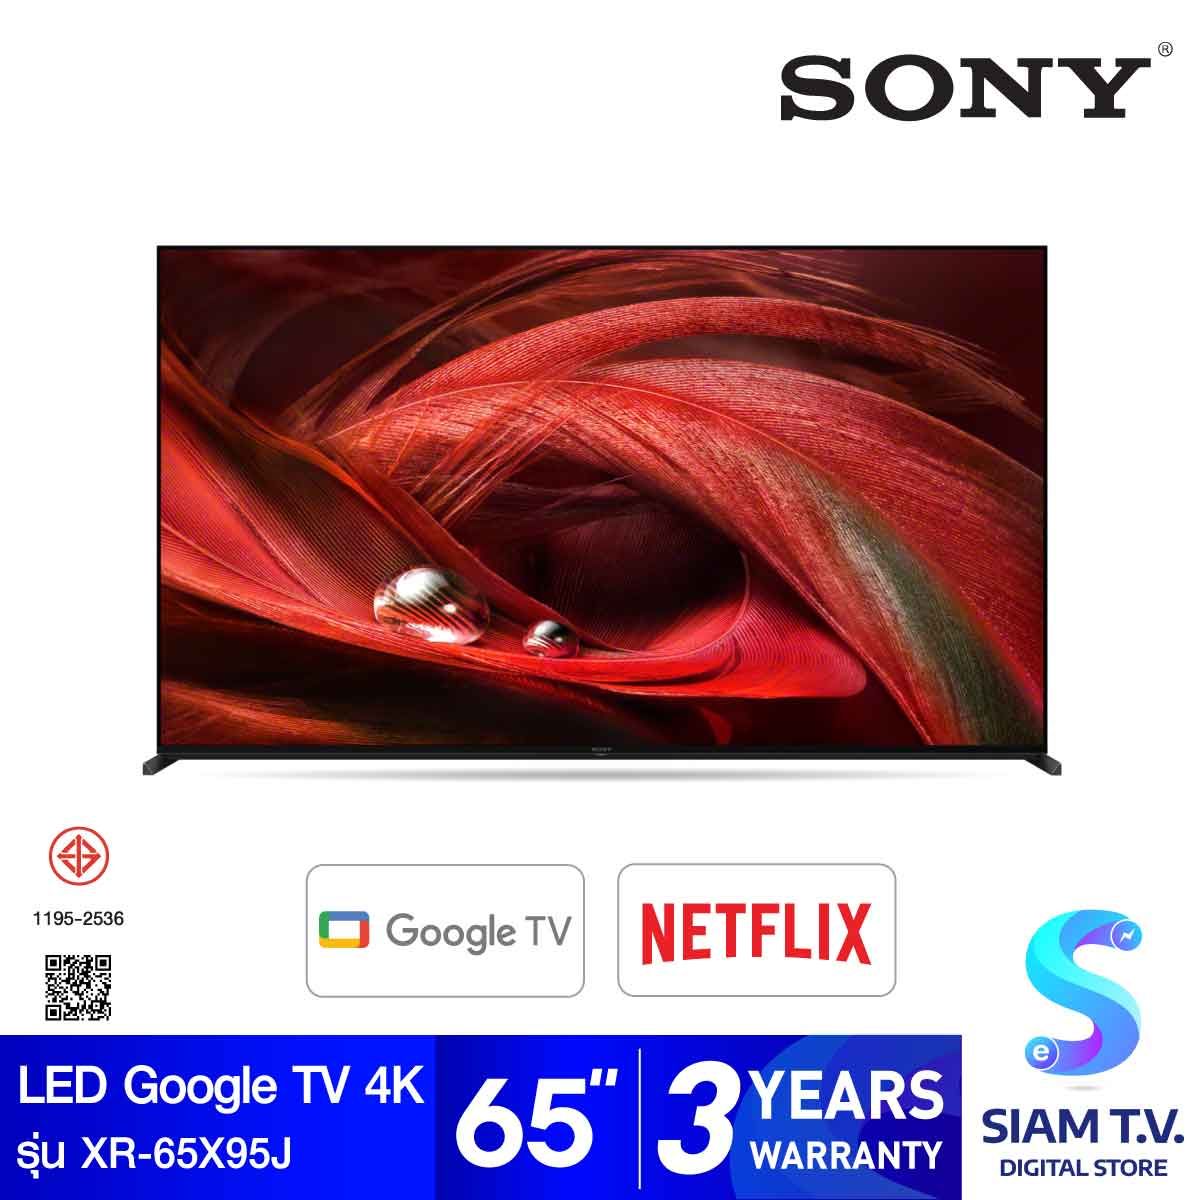 SONY LED Google TV 4K 120 Hz รุ่น XR-65X95J สมาร์ททีวี ขนาด 65 นิ้ว  X95J Series